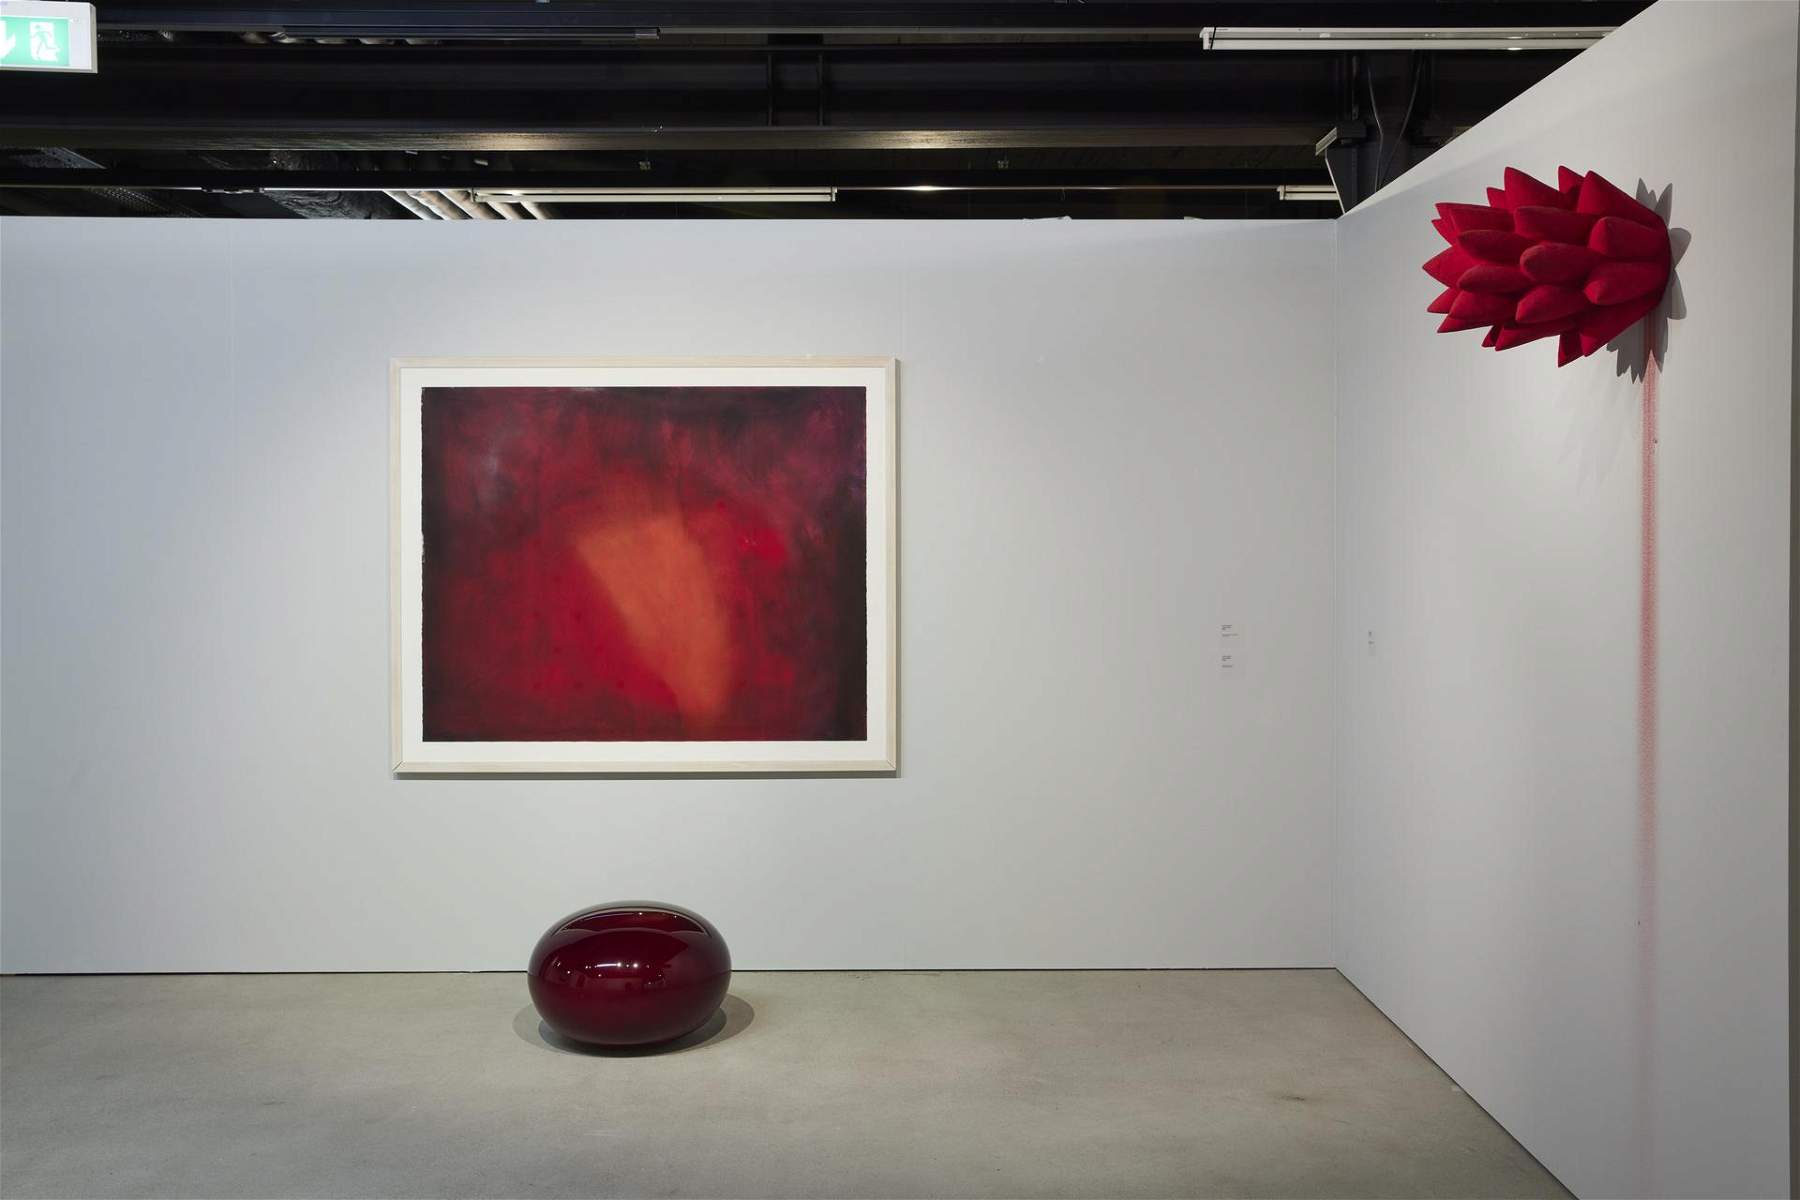 Lugano, la collection Olgiati offre un affichage centré sur le rouge